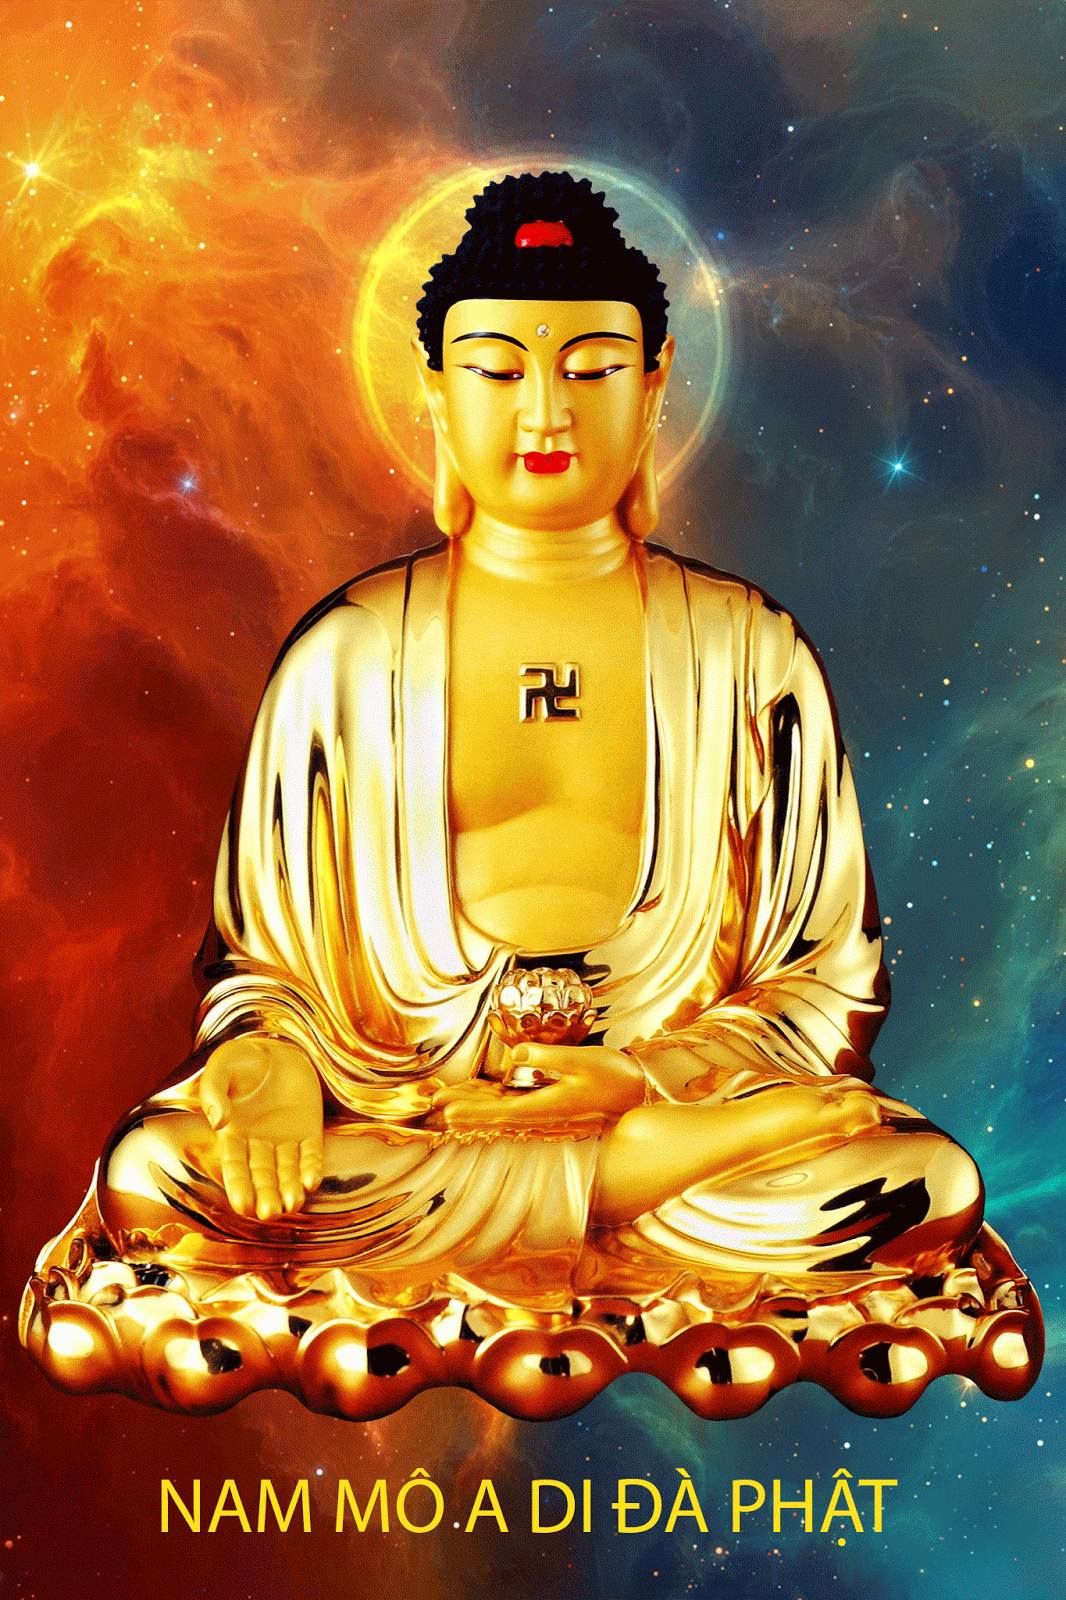 Hình Phật A Di Đà động - Hình ảnh Phật rất đẹp unique cao